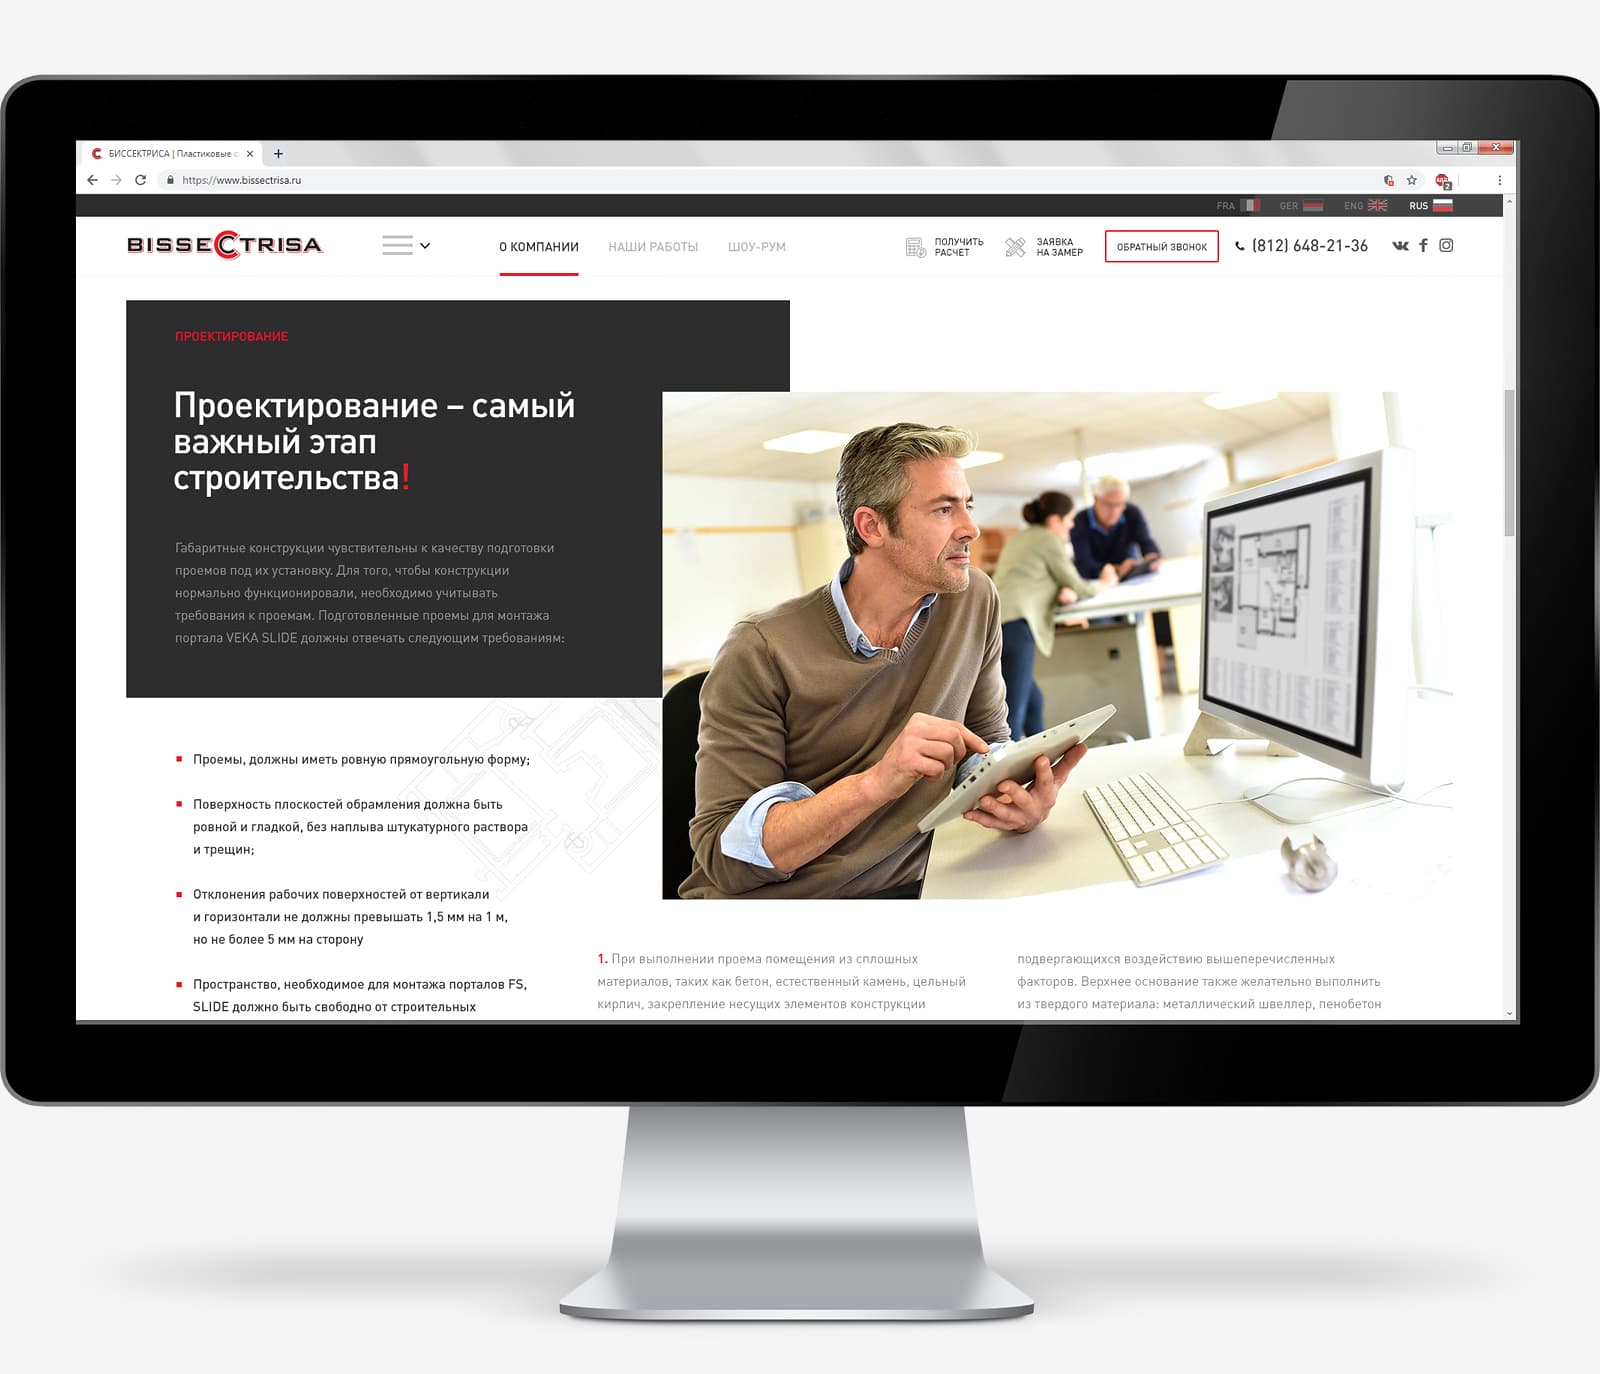 Дизайн сайта для компании Bissectrisa по направлению «Алюминиевые конструкции»